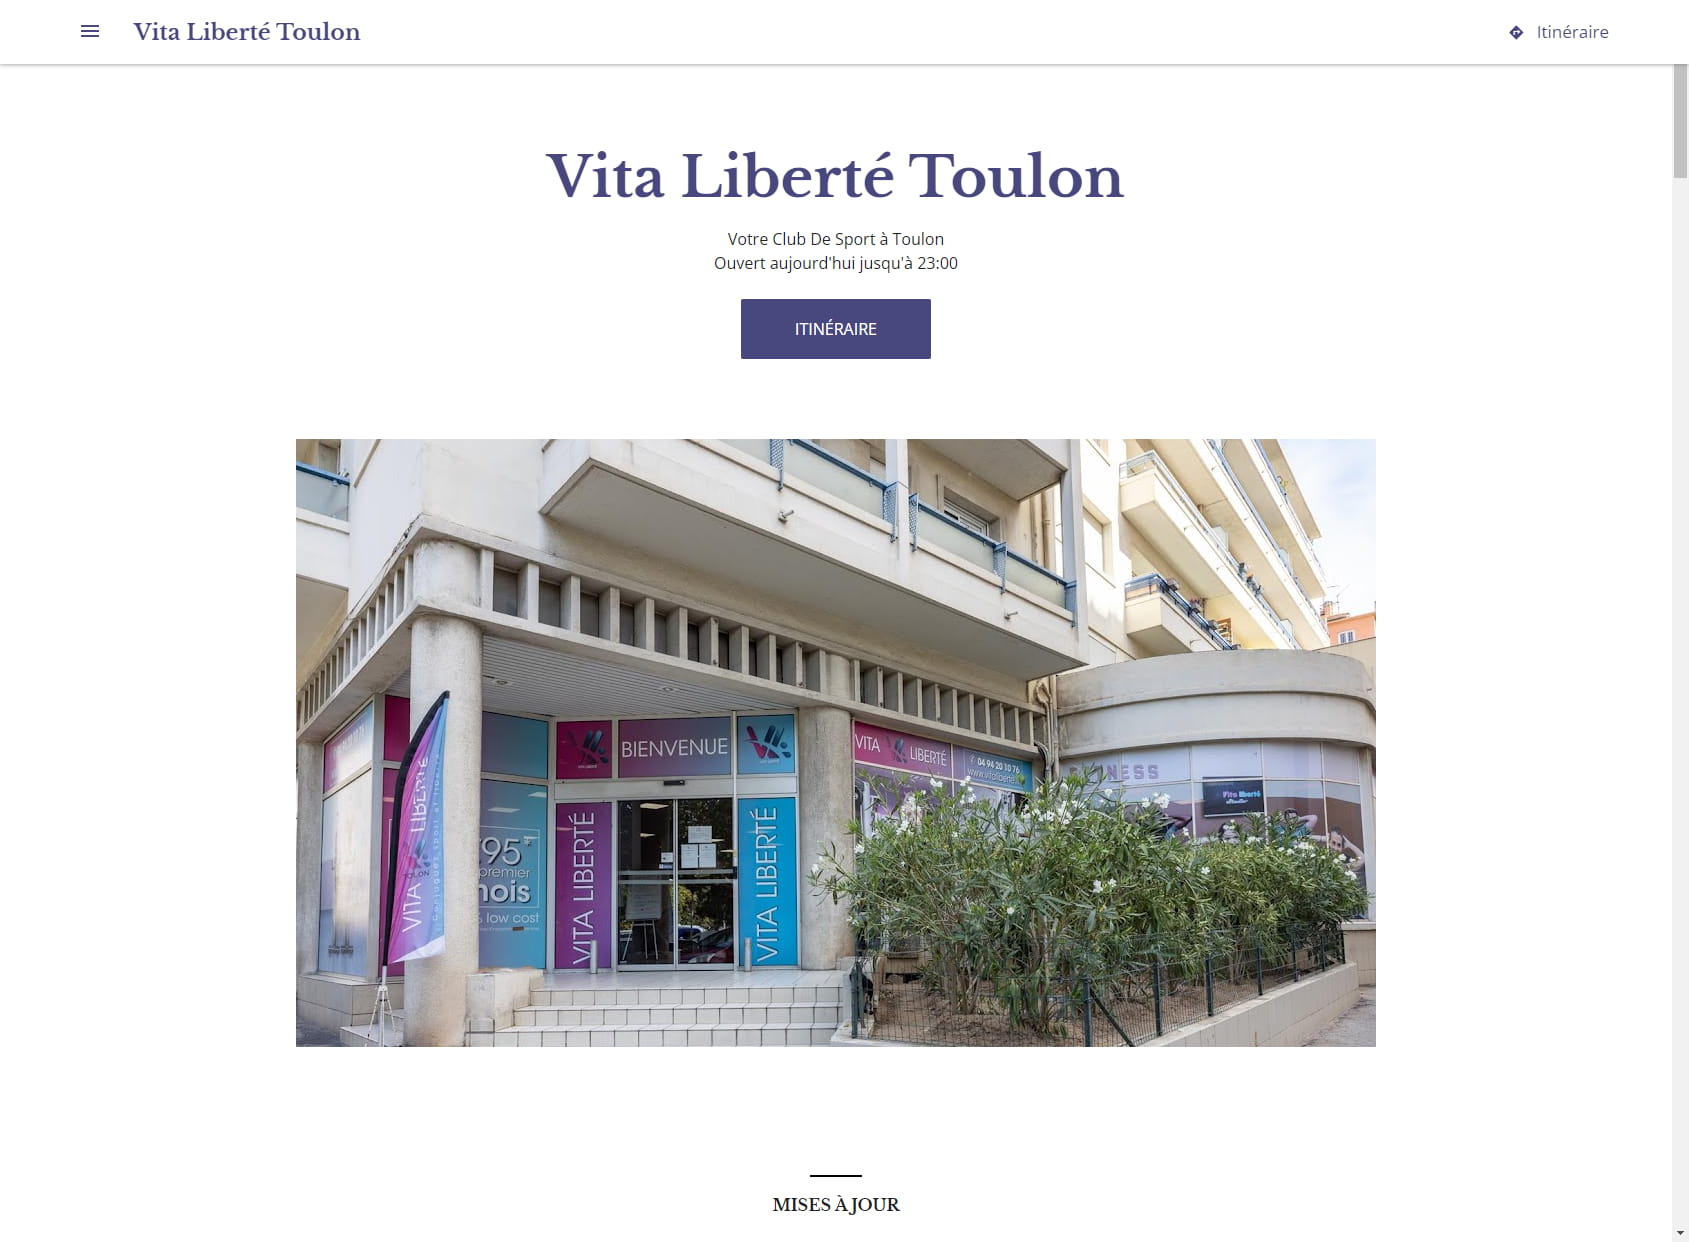 Vita Liberté Toulon